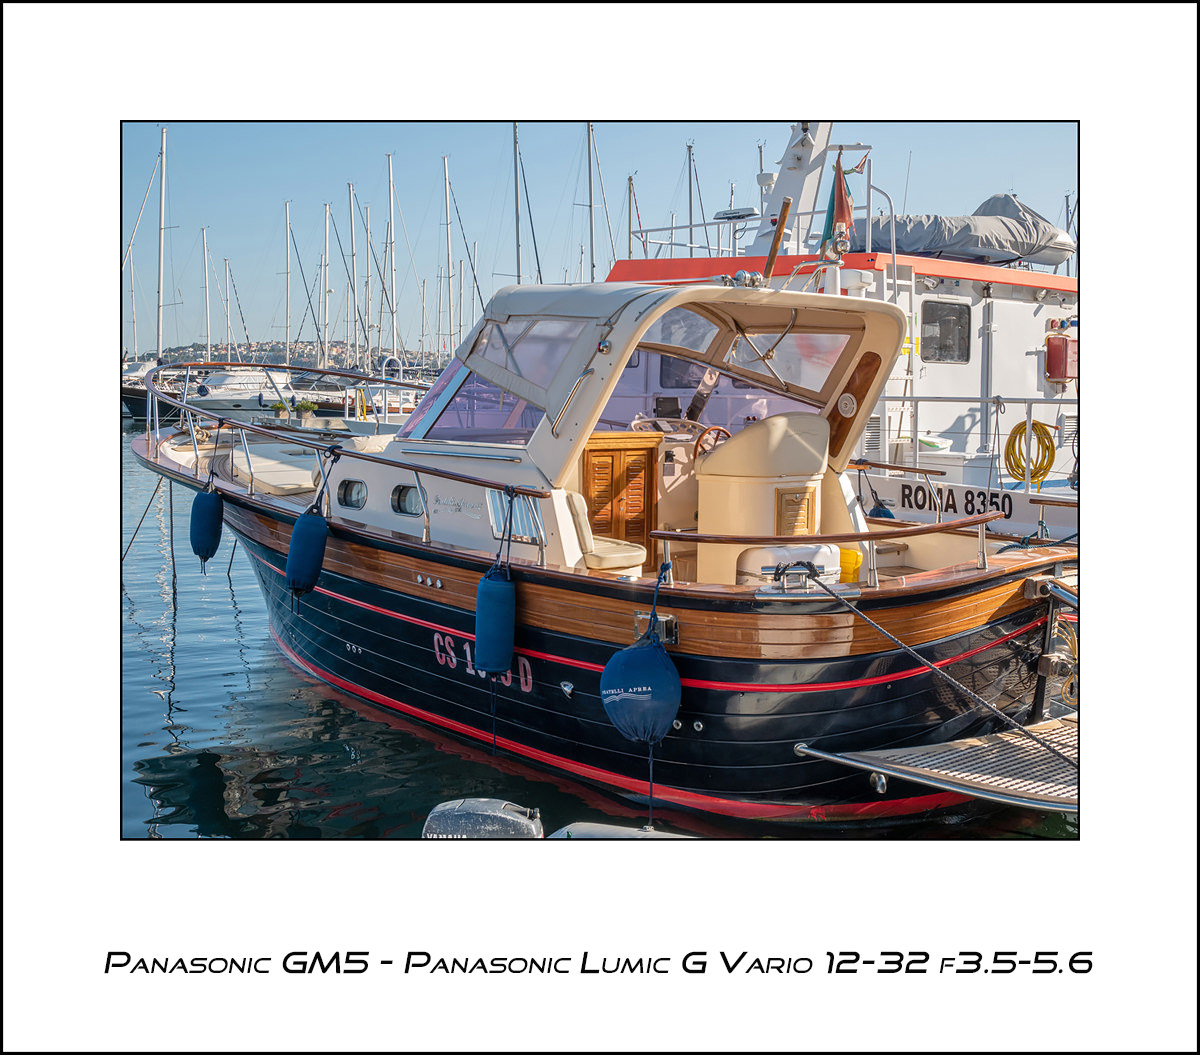 Panasonic GM5 - Panasonic G Vario 12-32 f3.5-5.6